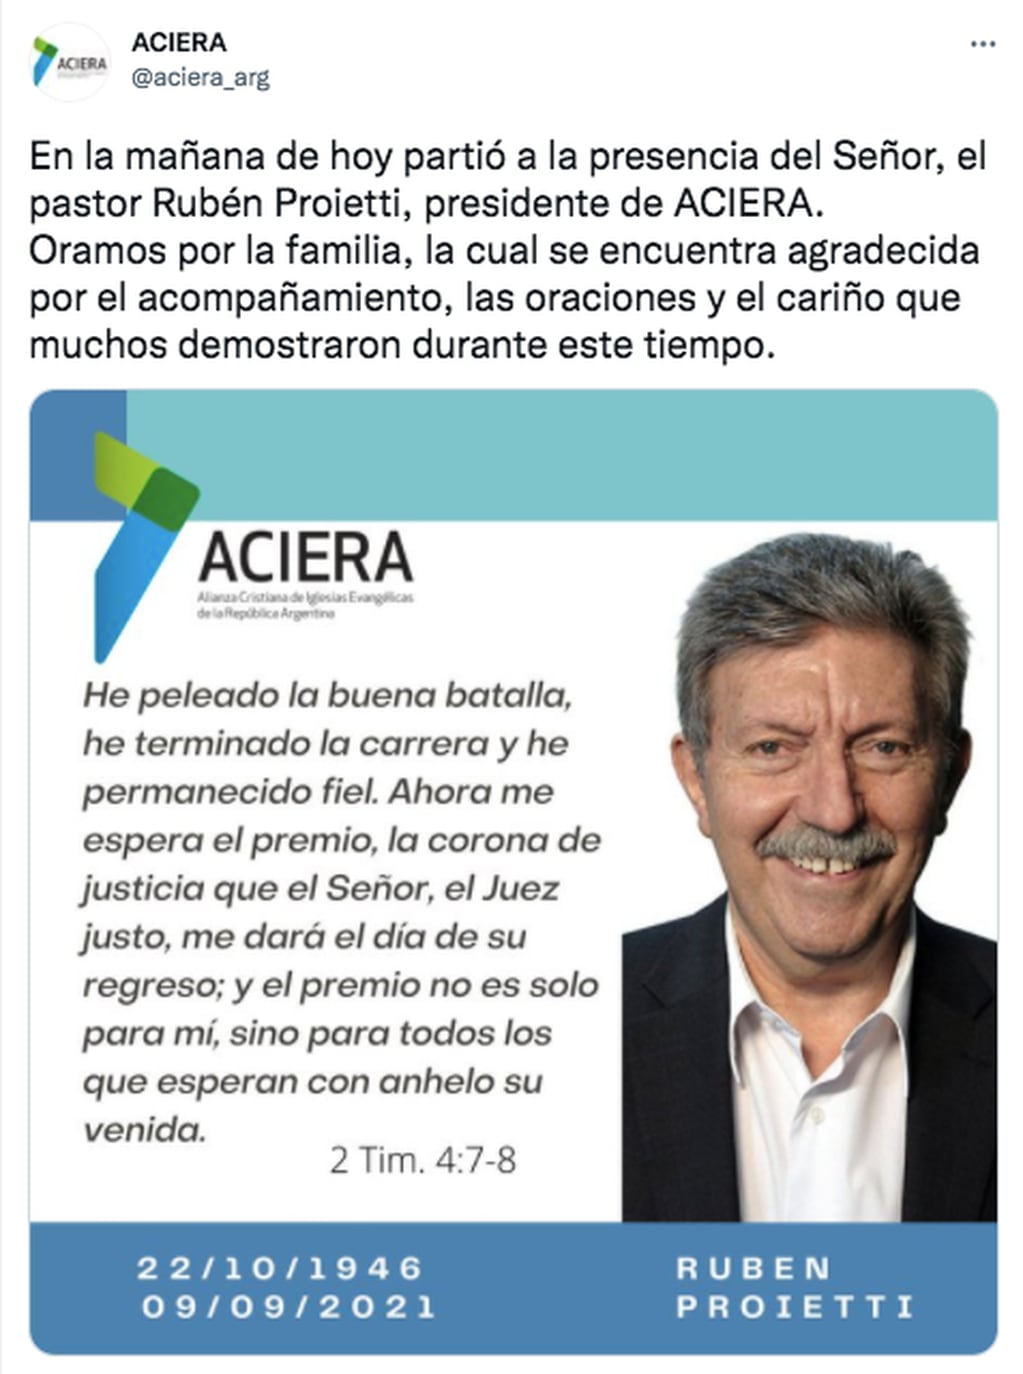 ACIERA comunicó la muerte de Rubén Proietti.